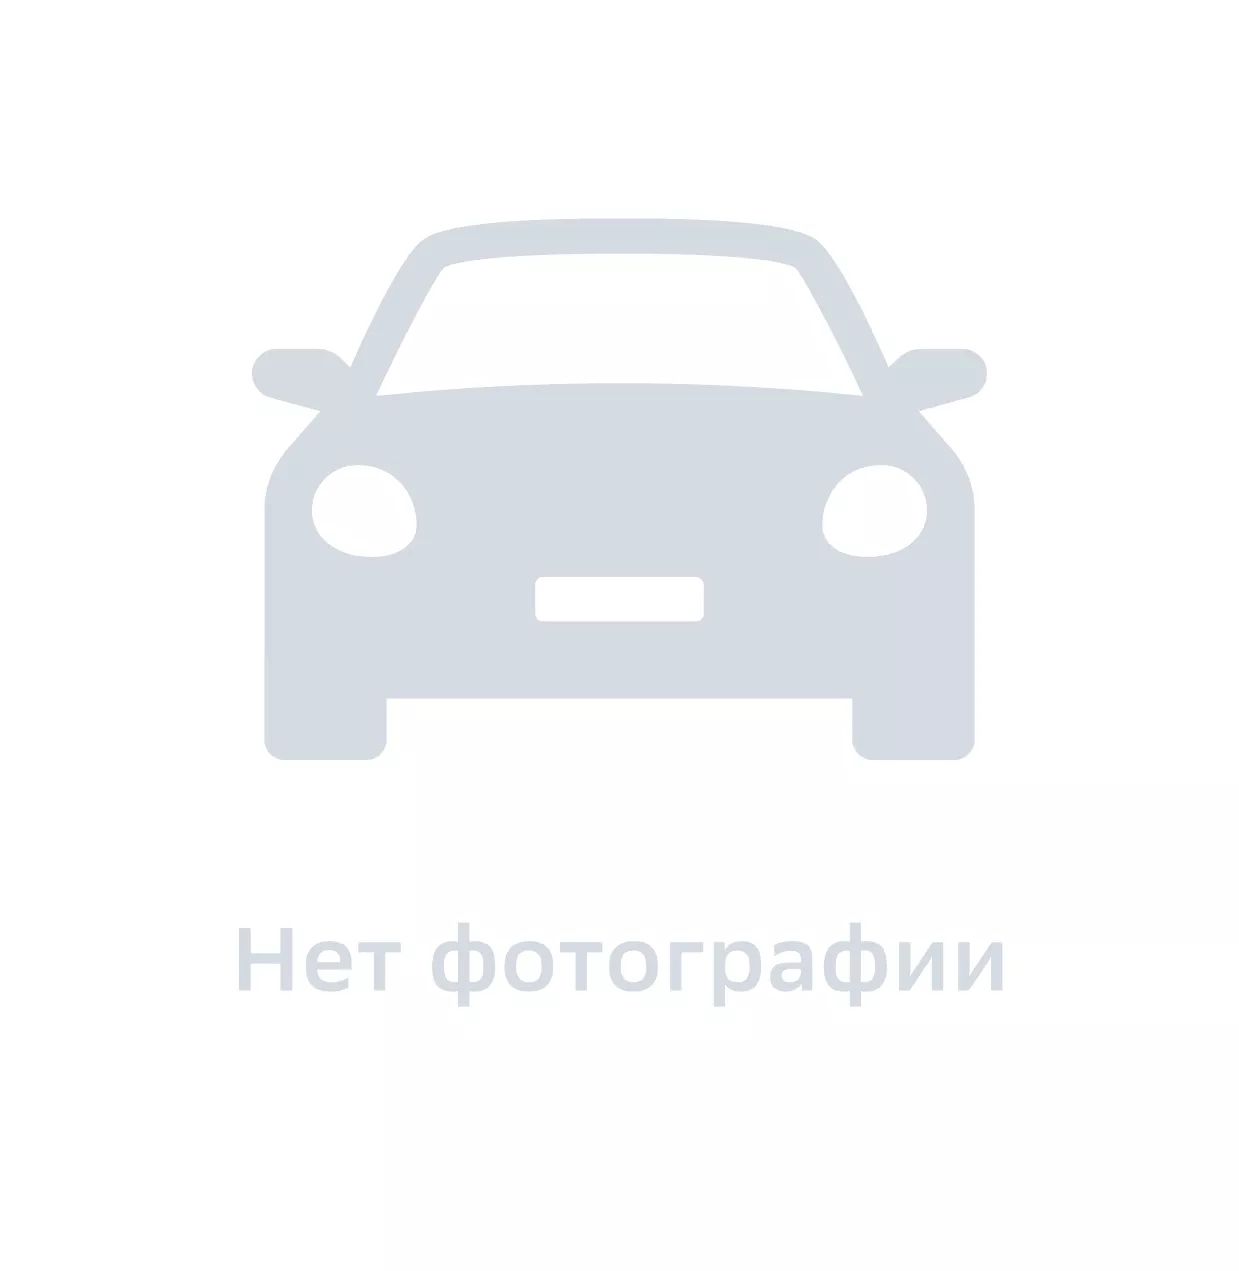 Трос стояночного тормоза, Ukorauto, UHD2H593408, цена за 1 шт.